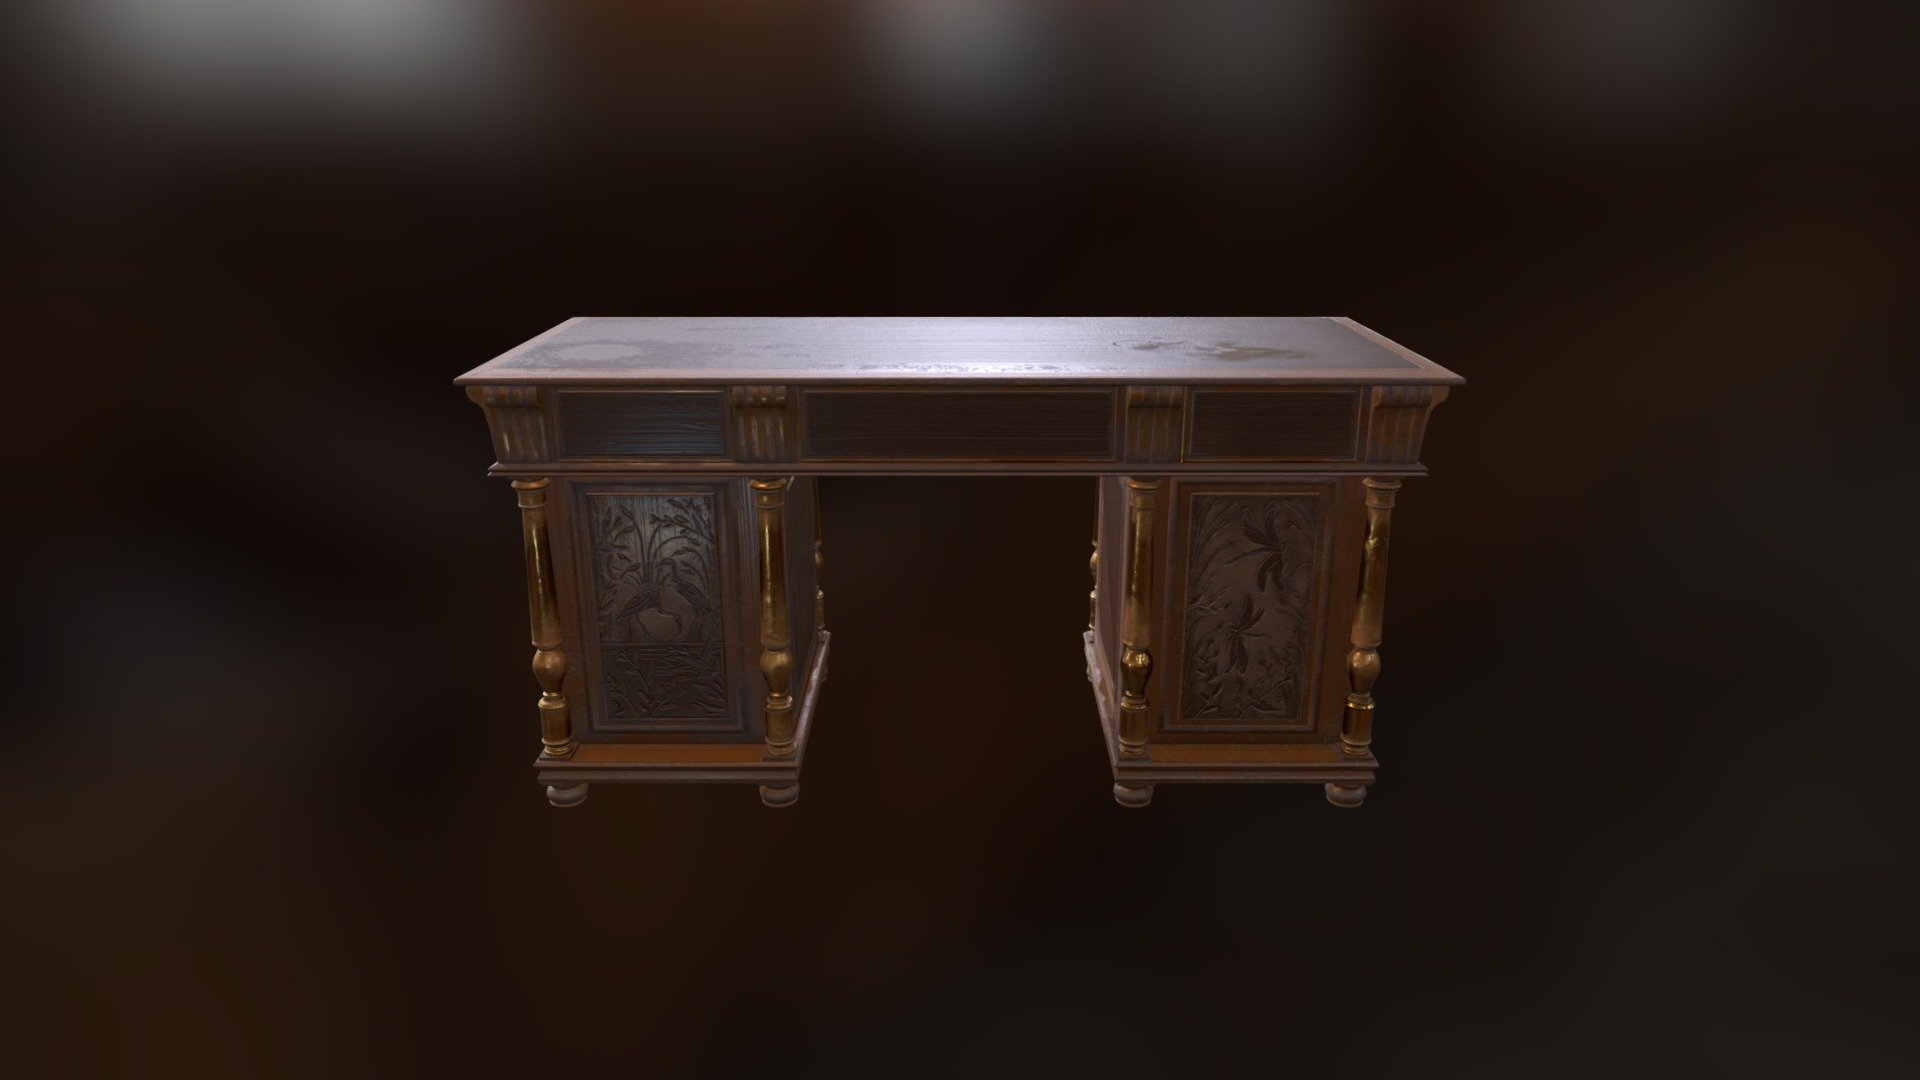 The Antique Desk